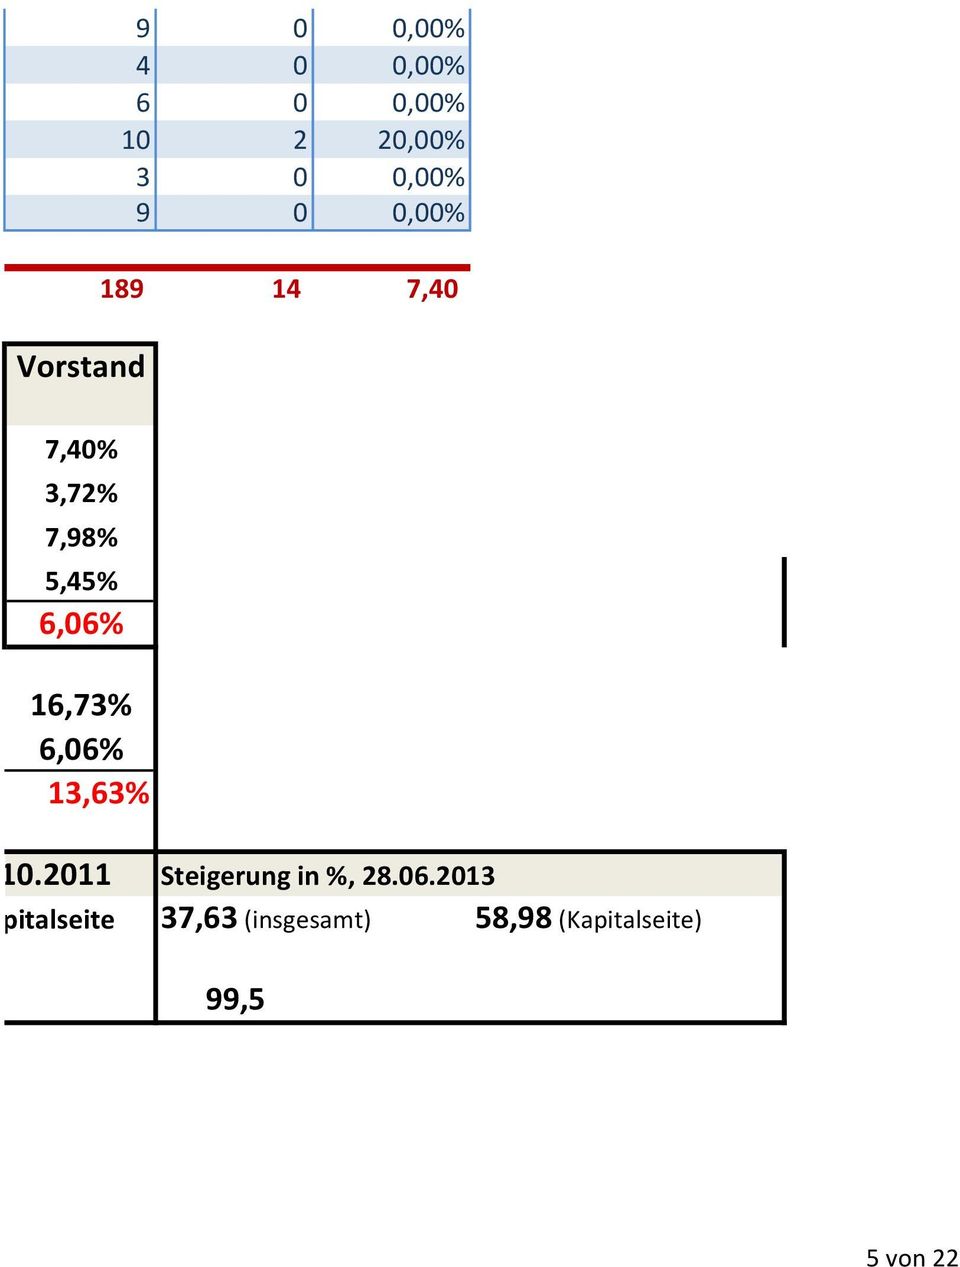 10.2011 1,07% Kapitalseite 2% Steigerung in %, 28.06.